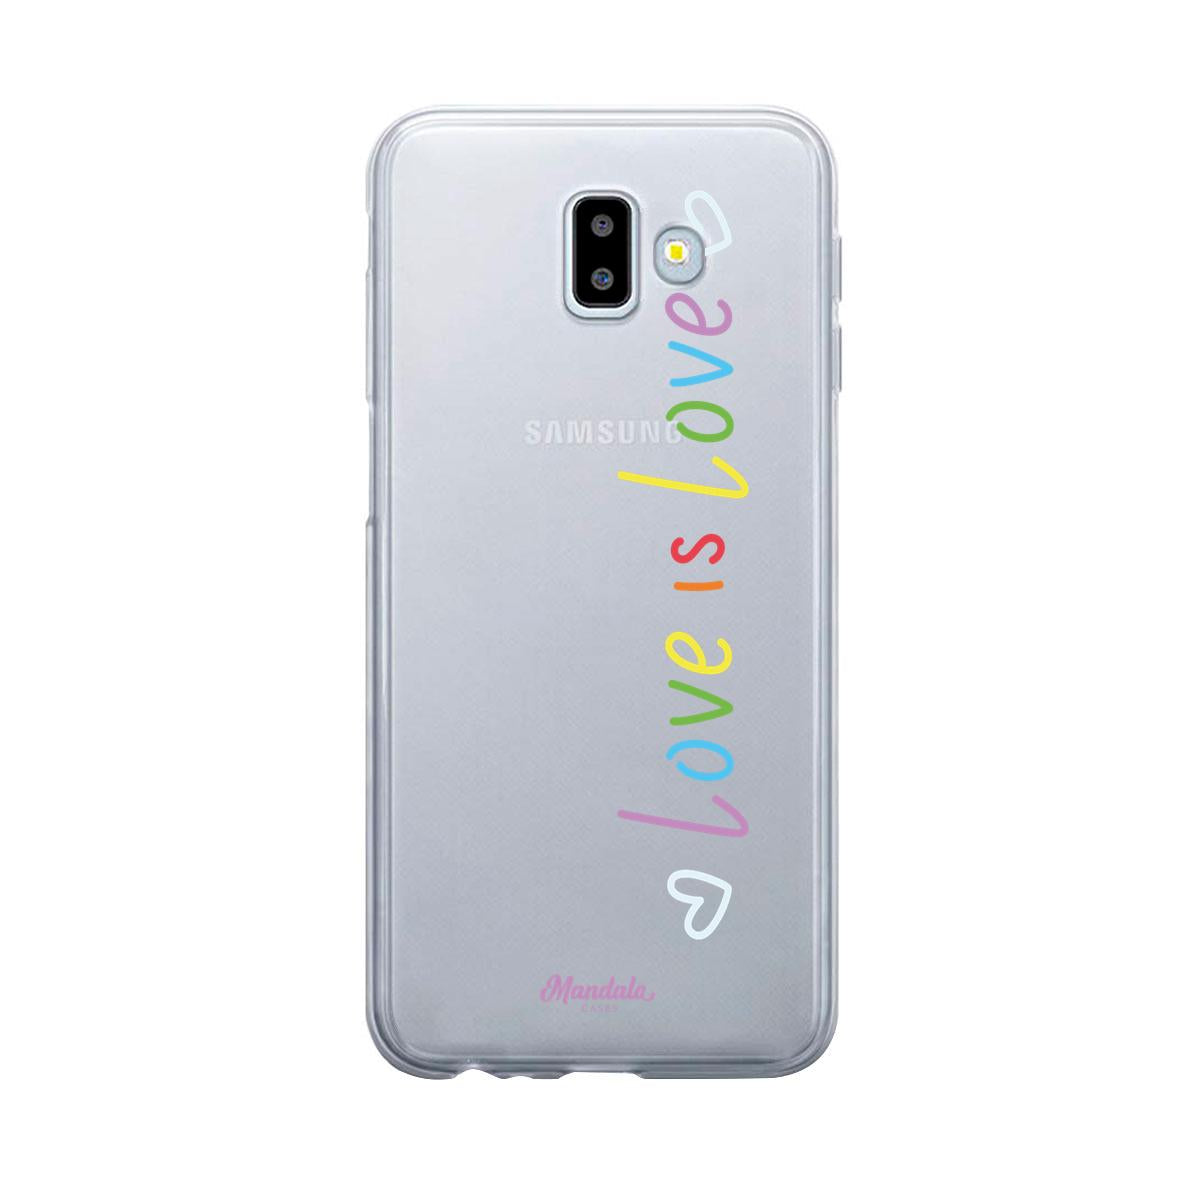 Estuches para Samsung J6 Plus - Love Case  - Mandala Cases